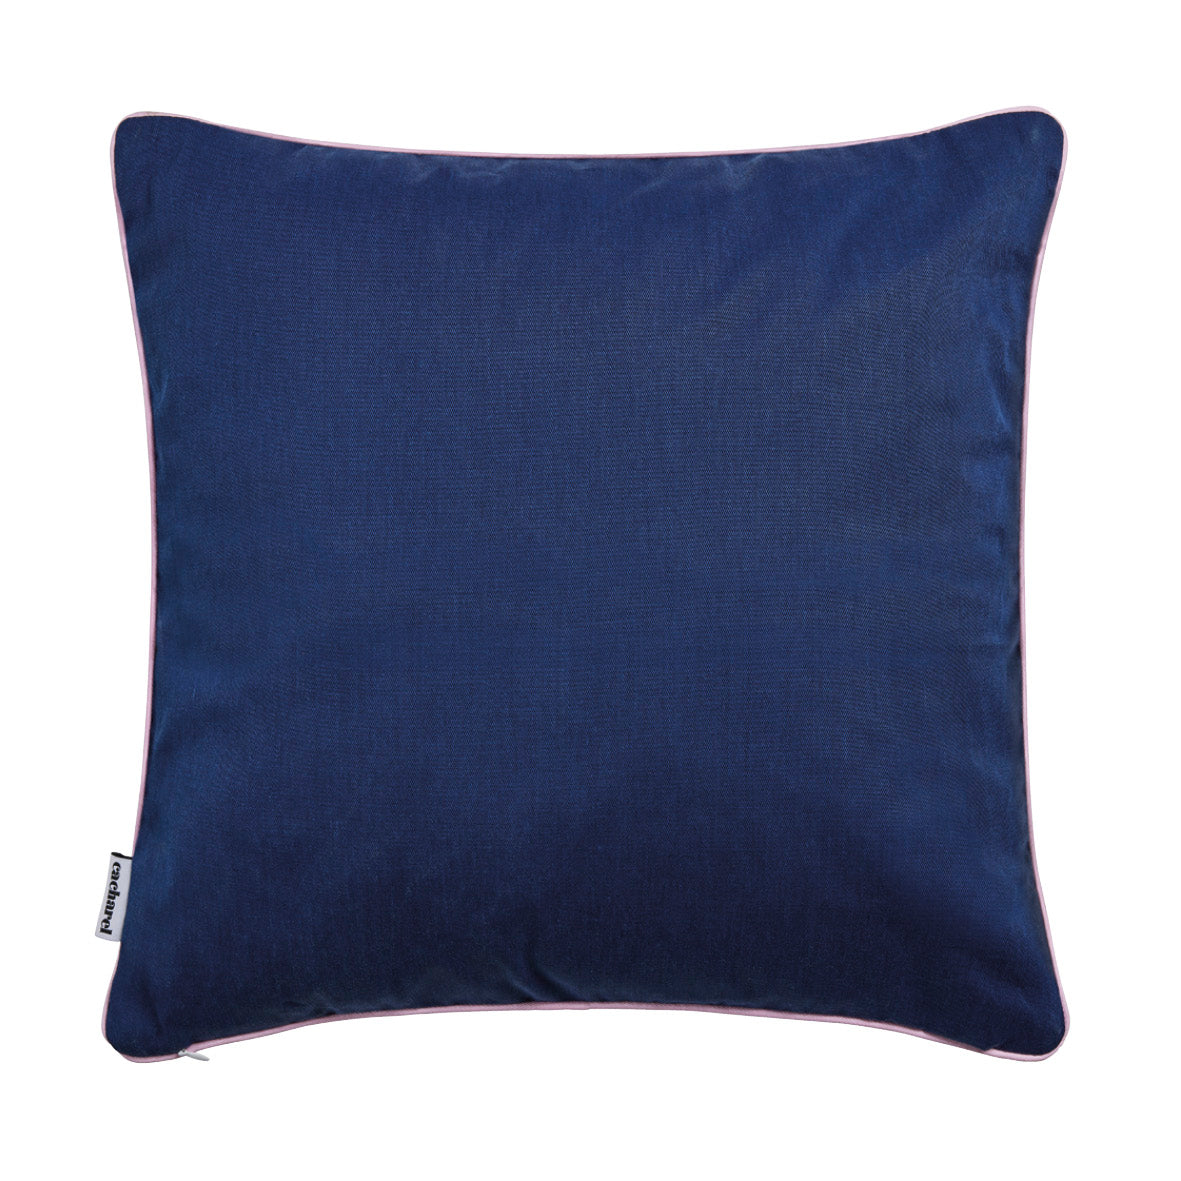 Cushion cover - 45 x 45 cm : Aurore Dark blue